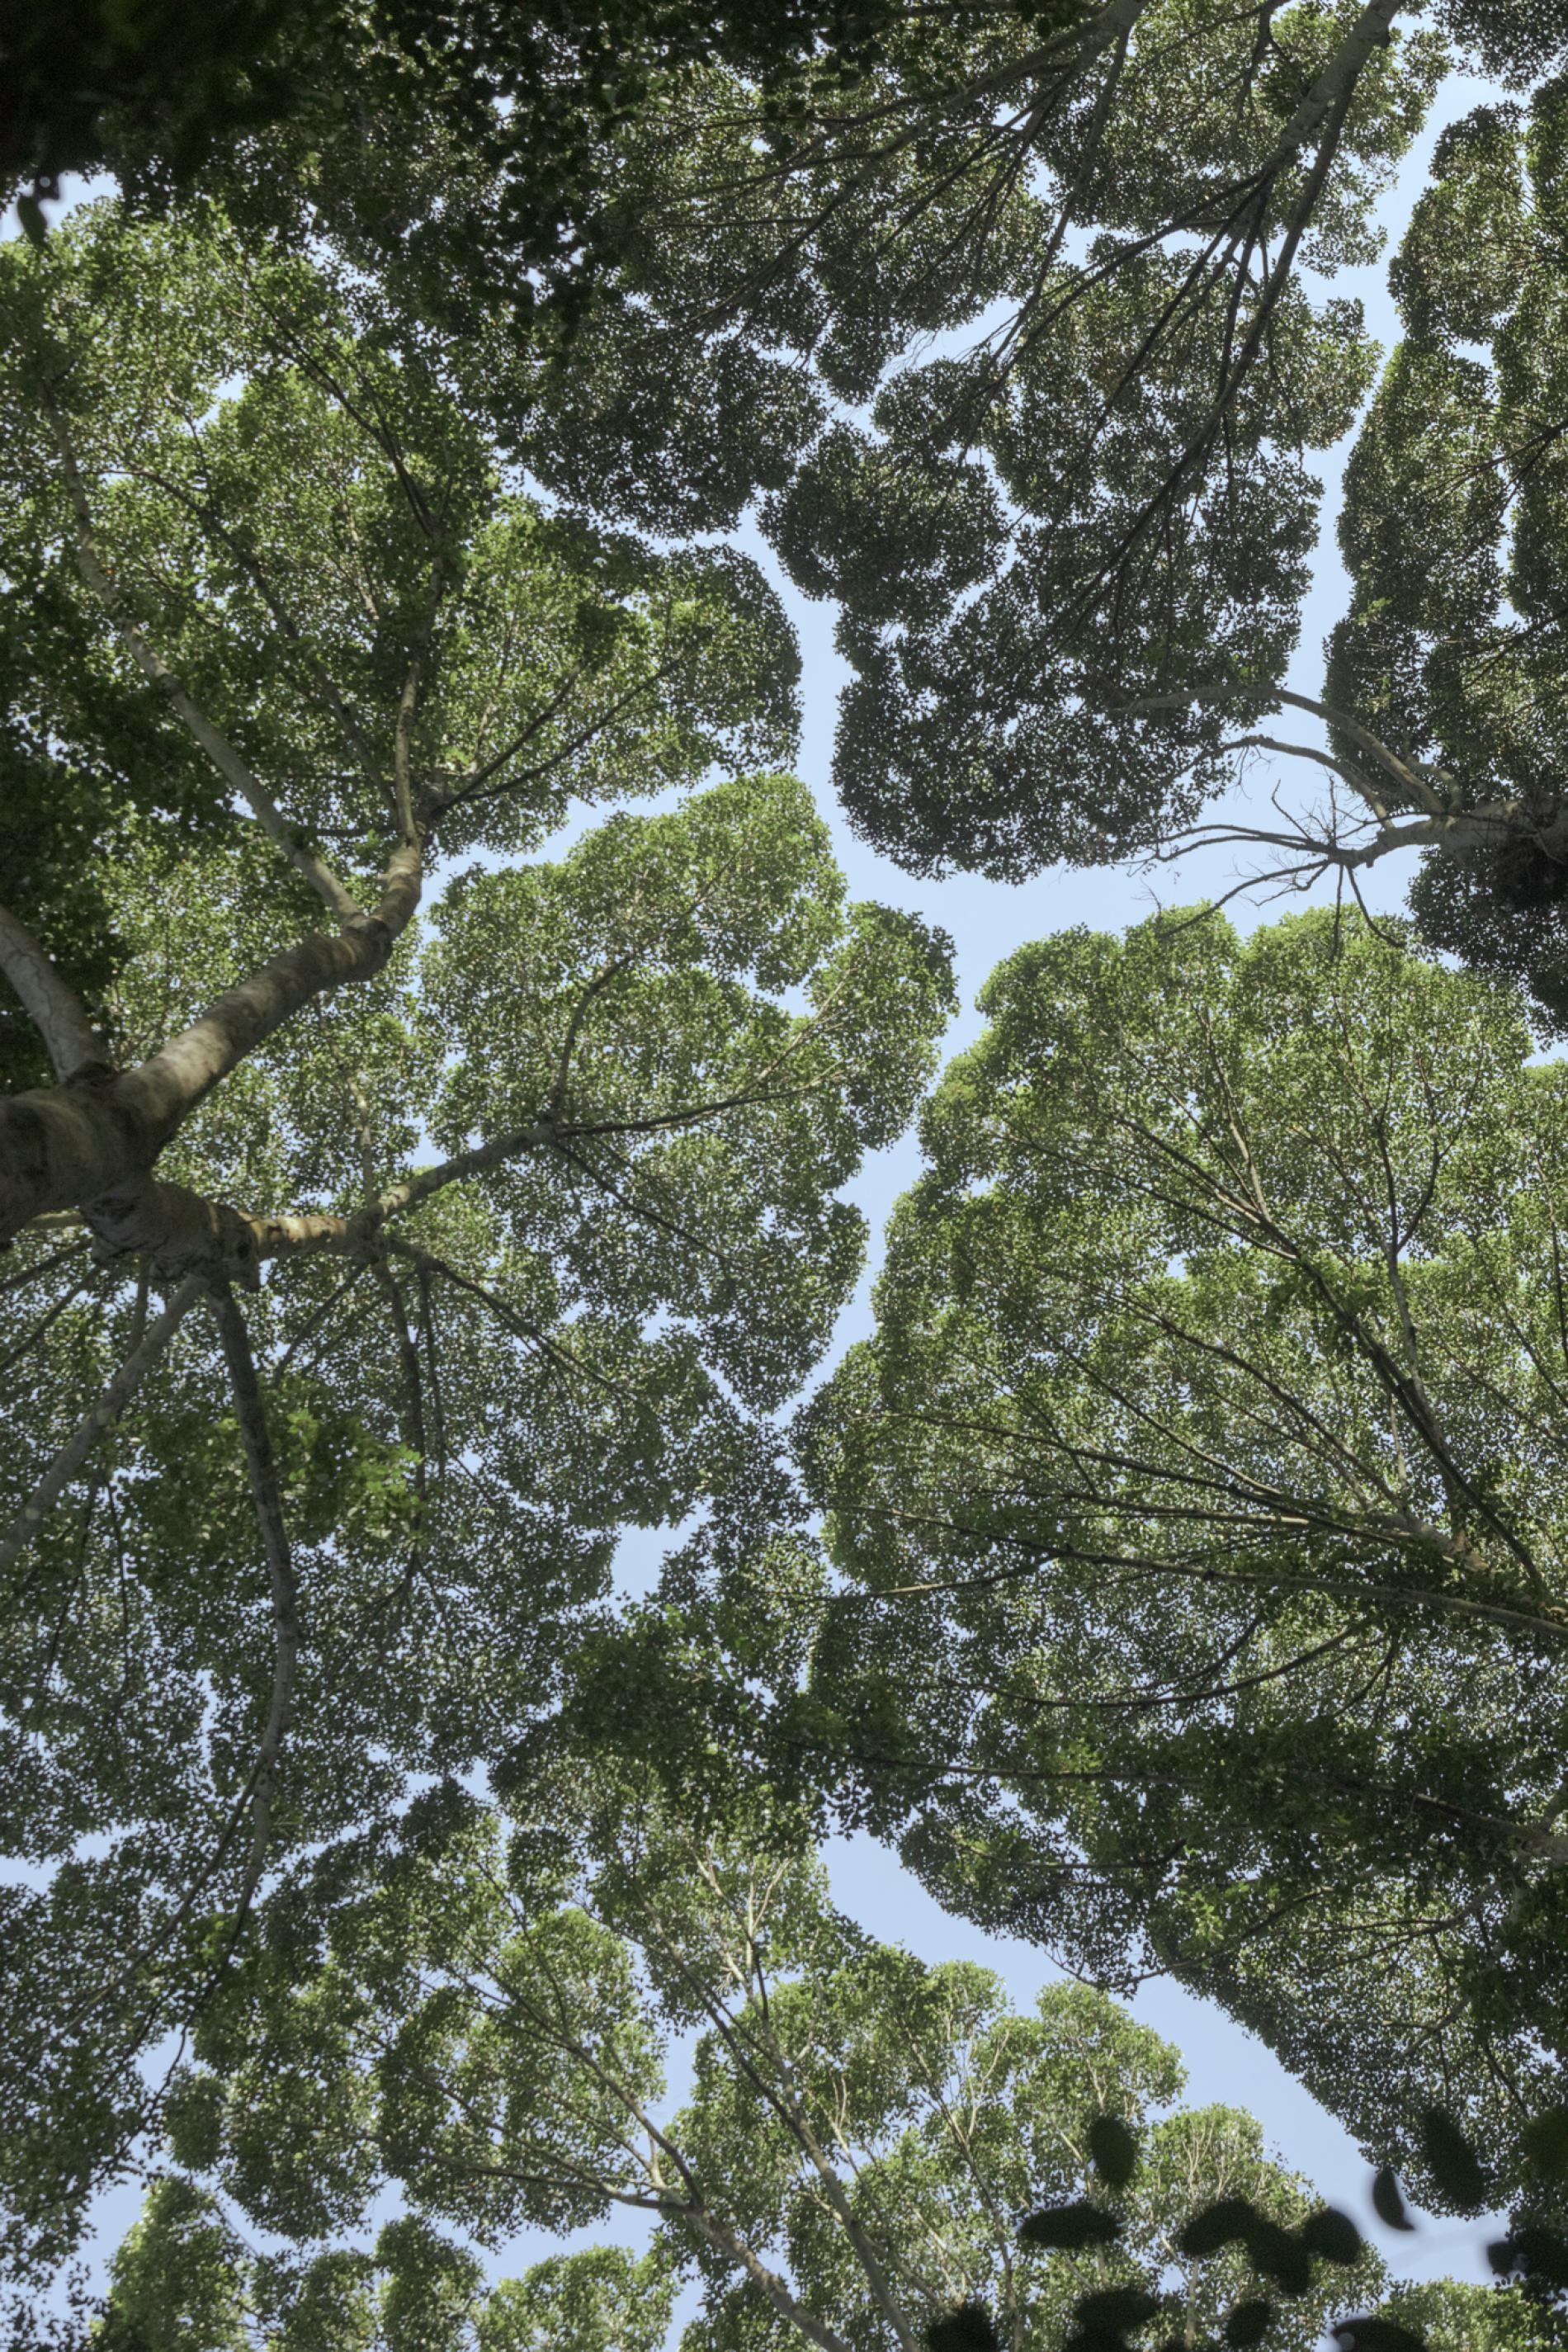 馬來西亞森林研究所（Forest Research Institute Malaysia）的龍腦香樹林展現出「樹冠羞避」的現象，也就是一些樹種的樹冠間會出現一些空隙以防止樹枝互相碰觸，形成像渠道一般的空隙。PHOTOGRAPH BY IAN TEH, NATIONAL GEOGRAPHIC